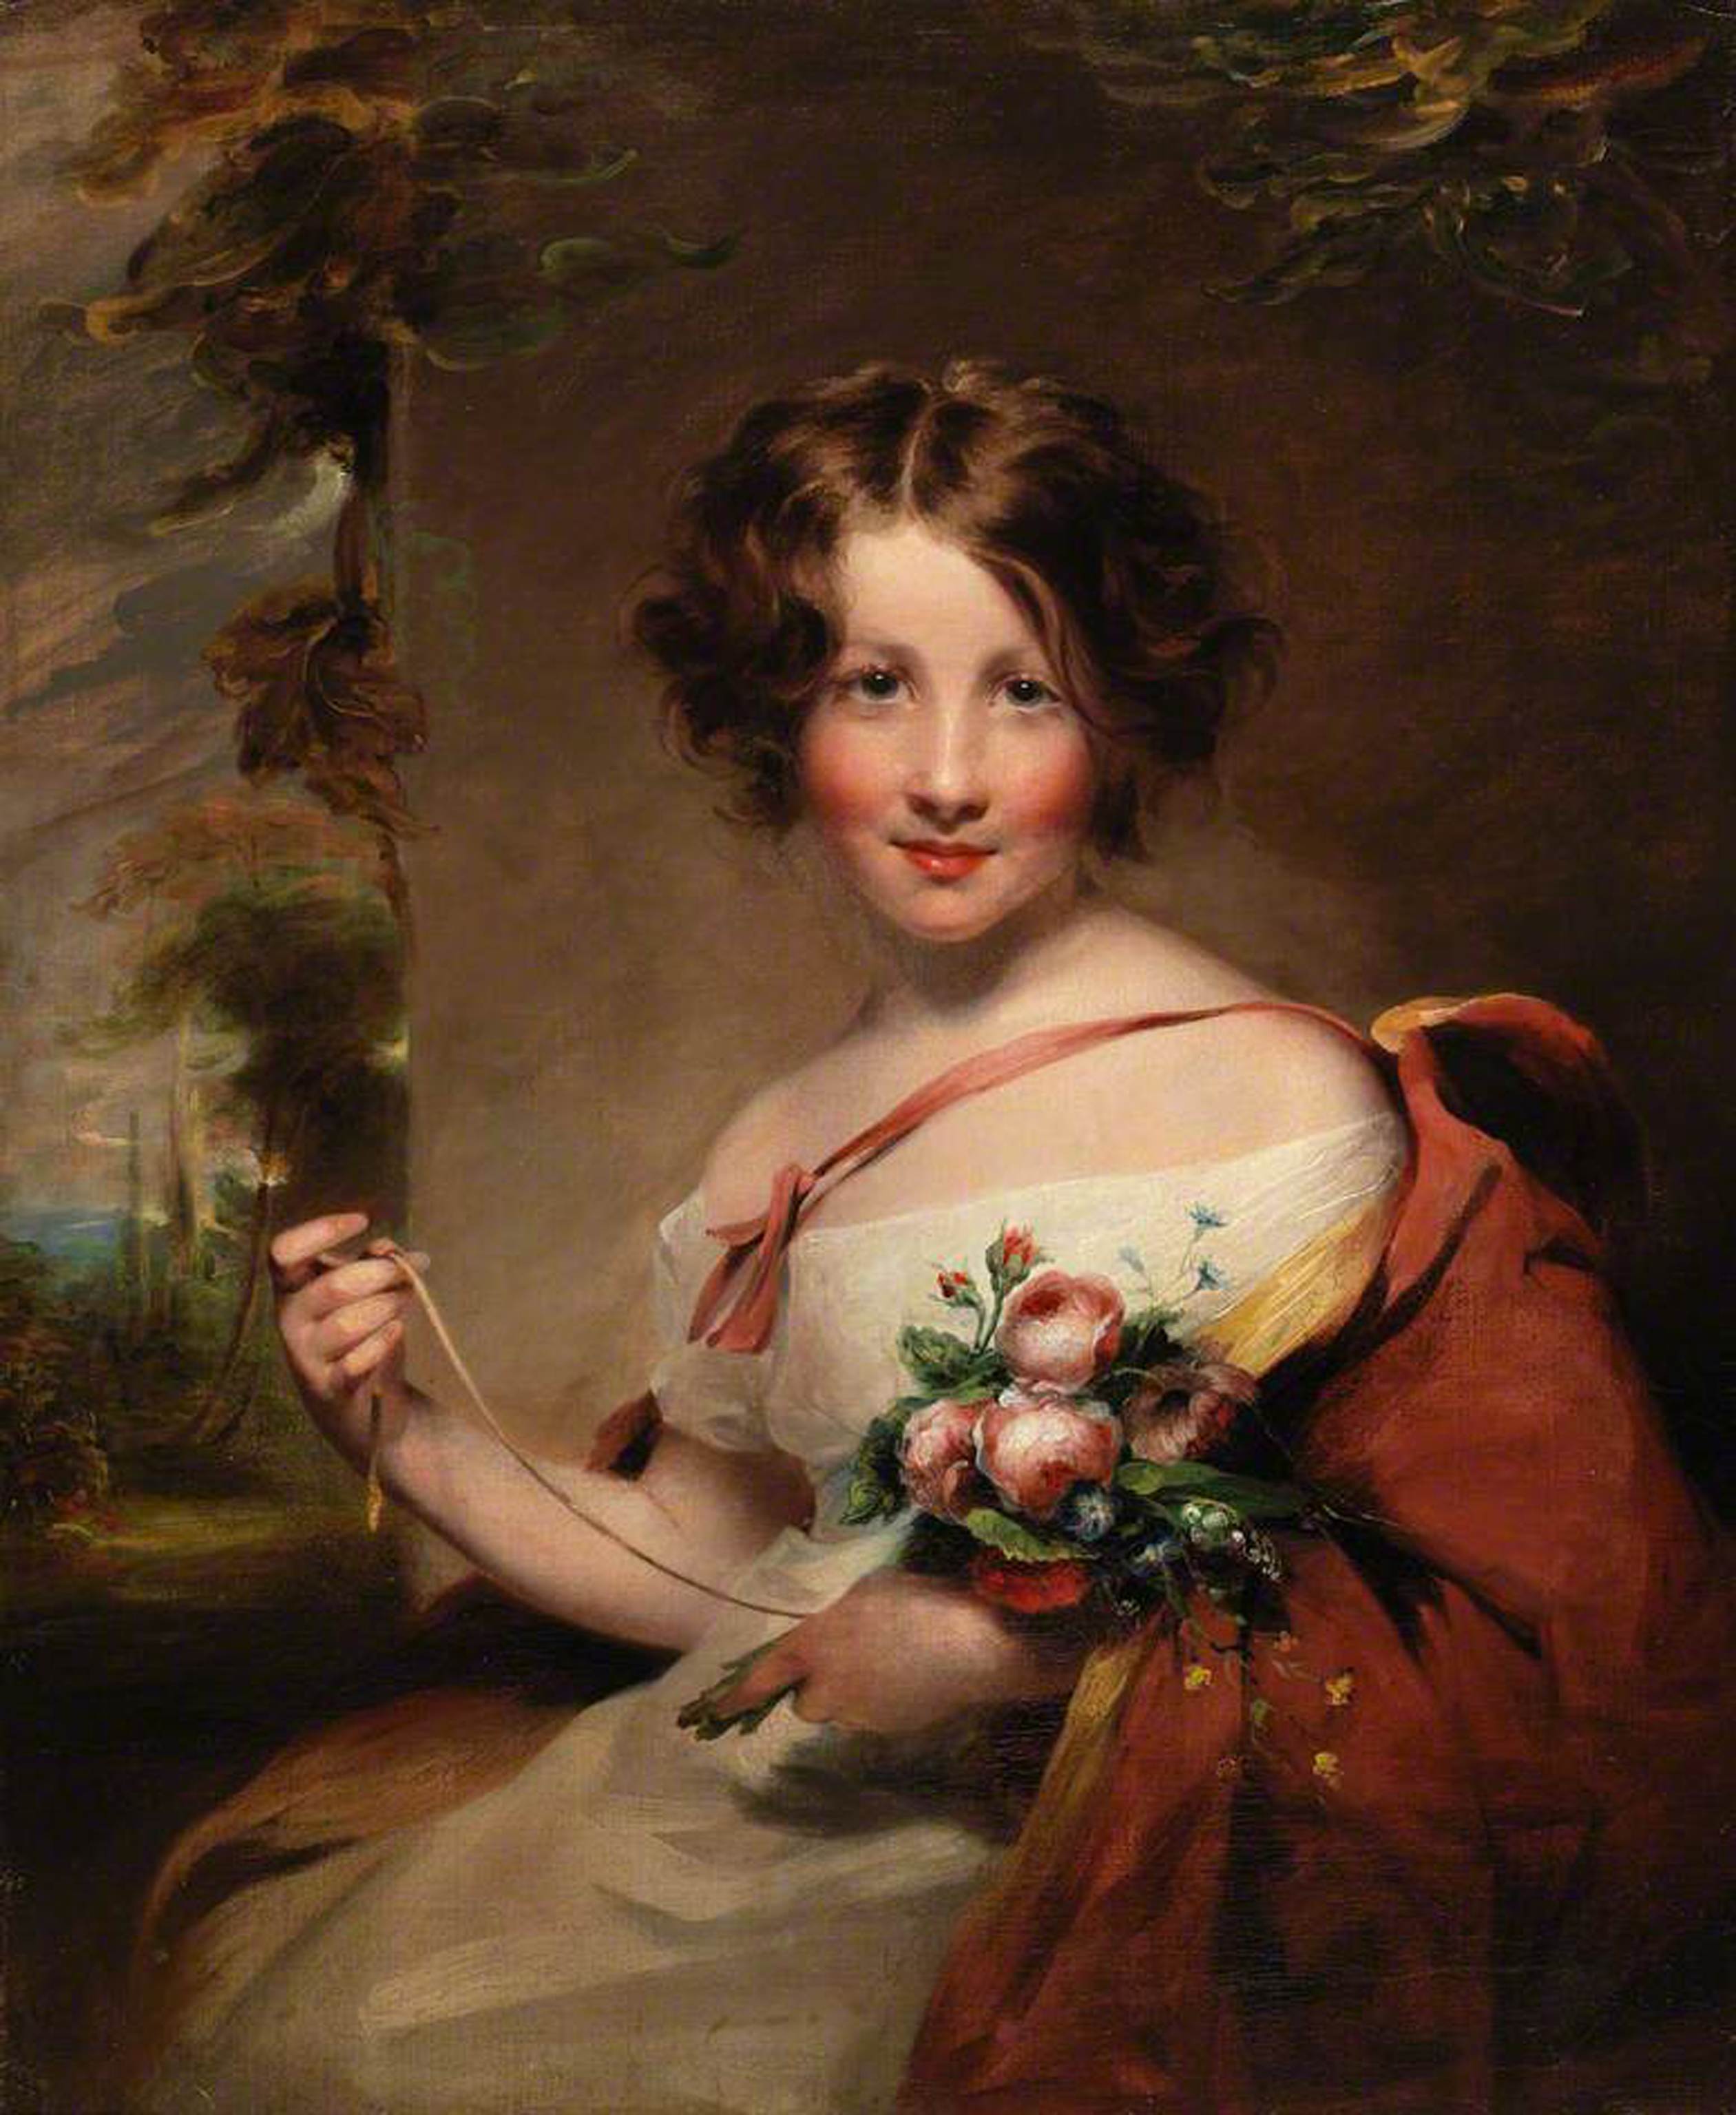 Ritratto di Maria Stella giovane, opera di M.S.Carpenter (1793-1872) una delle più apprezzate ritrattiste britanniche di prima metà Ottocento. Biblioteca Nazionale del Galles (immagine in pubblico dominio)